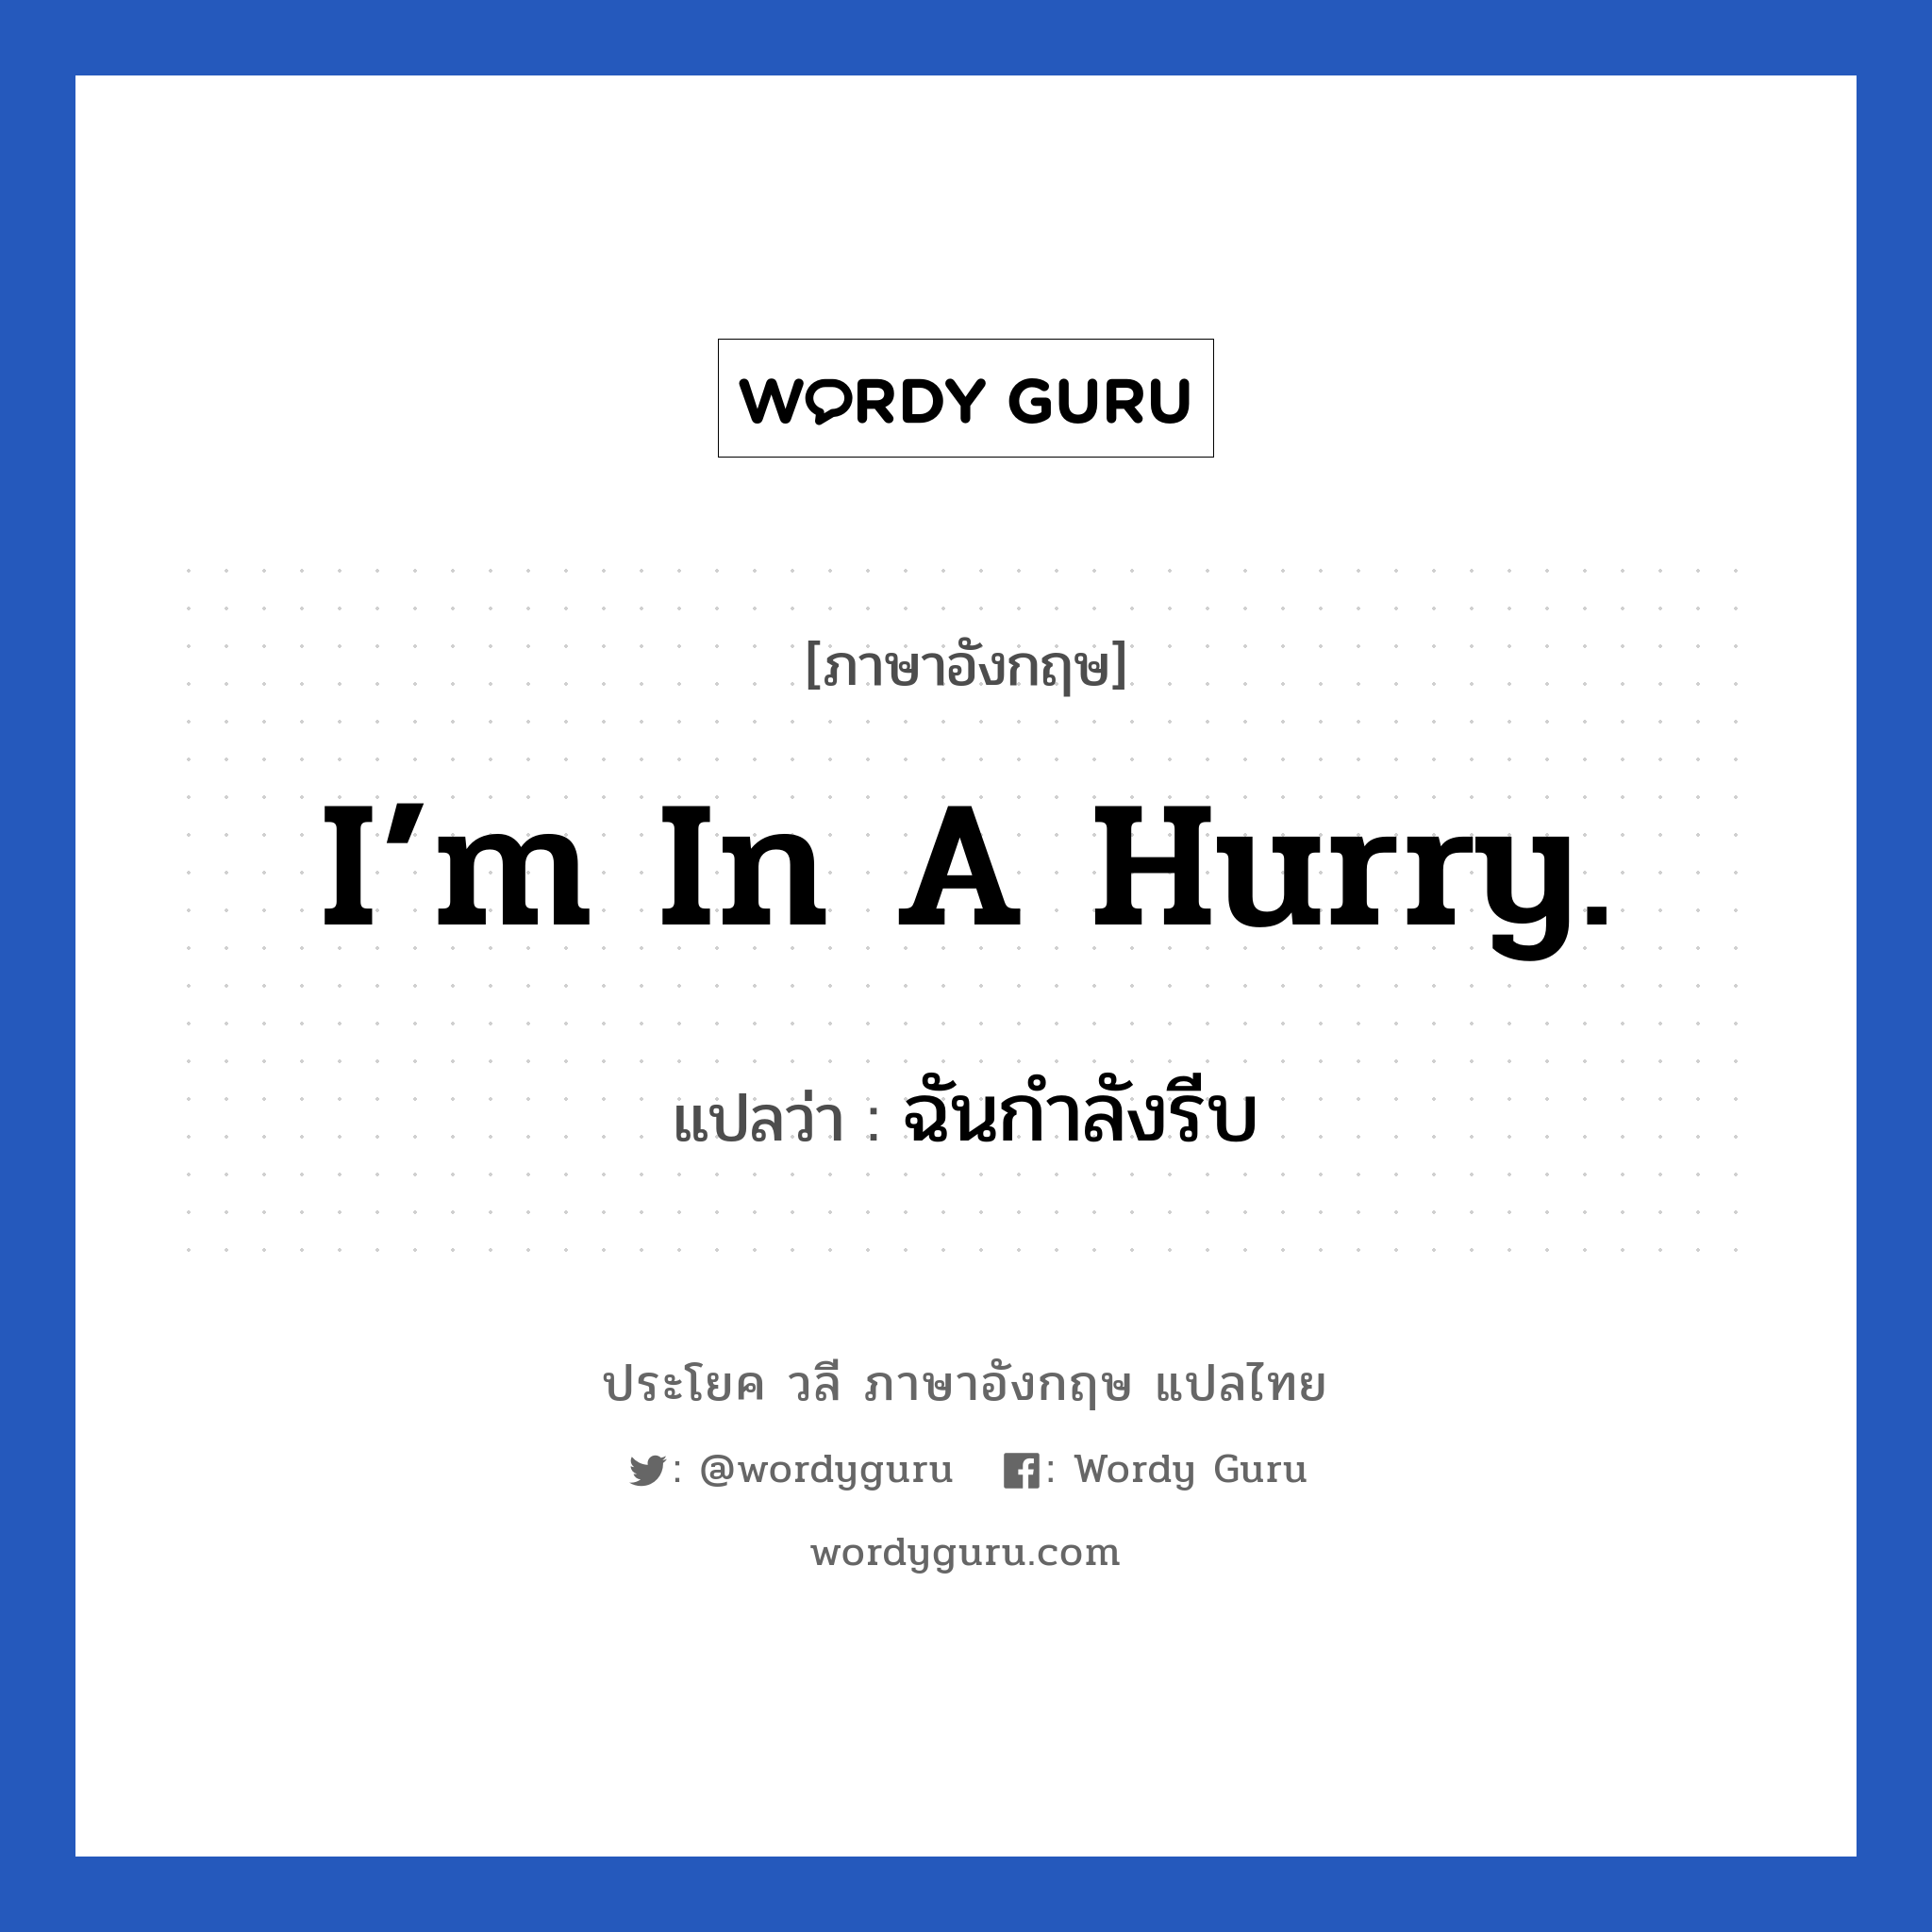 I’m in a hurry. แปลว่า?, วลีภาษาอังกฤษ I’m in a hurry. แปลว่า ฉันกำลังรีบ